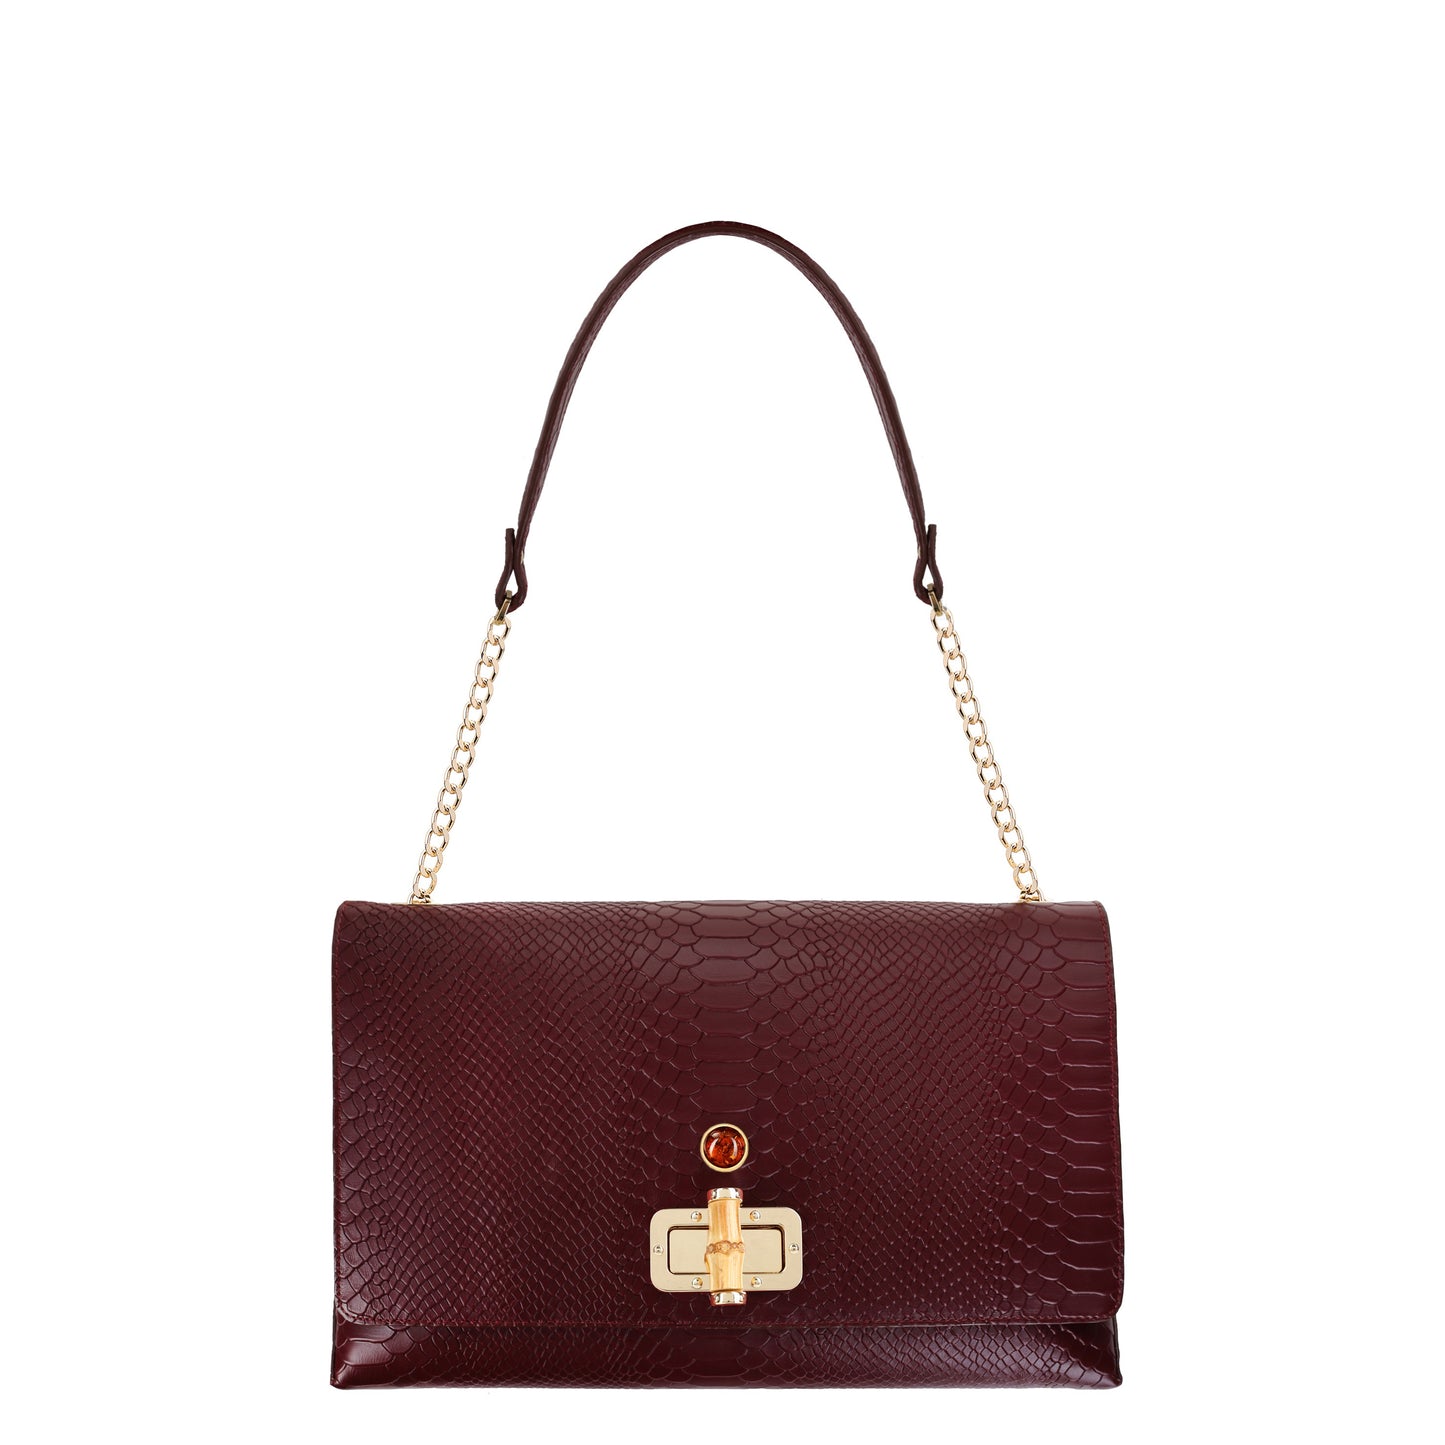 SAINT-TROPEZ CLARET women's leather handbag